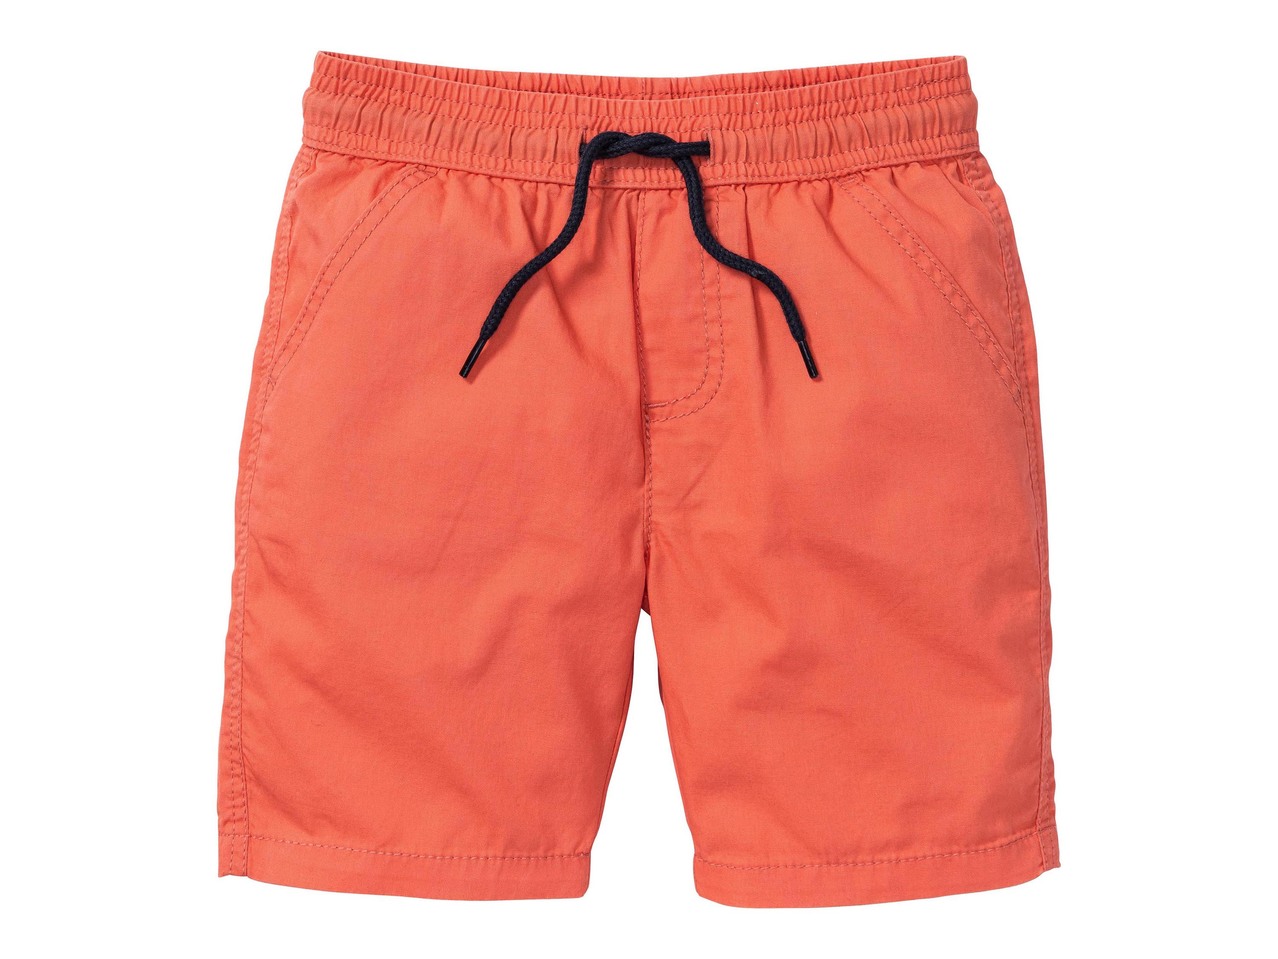 Boys' Bermudas Shorts, 2 pieces